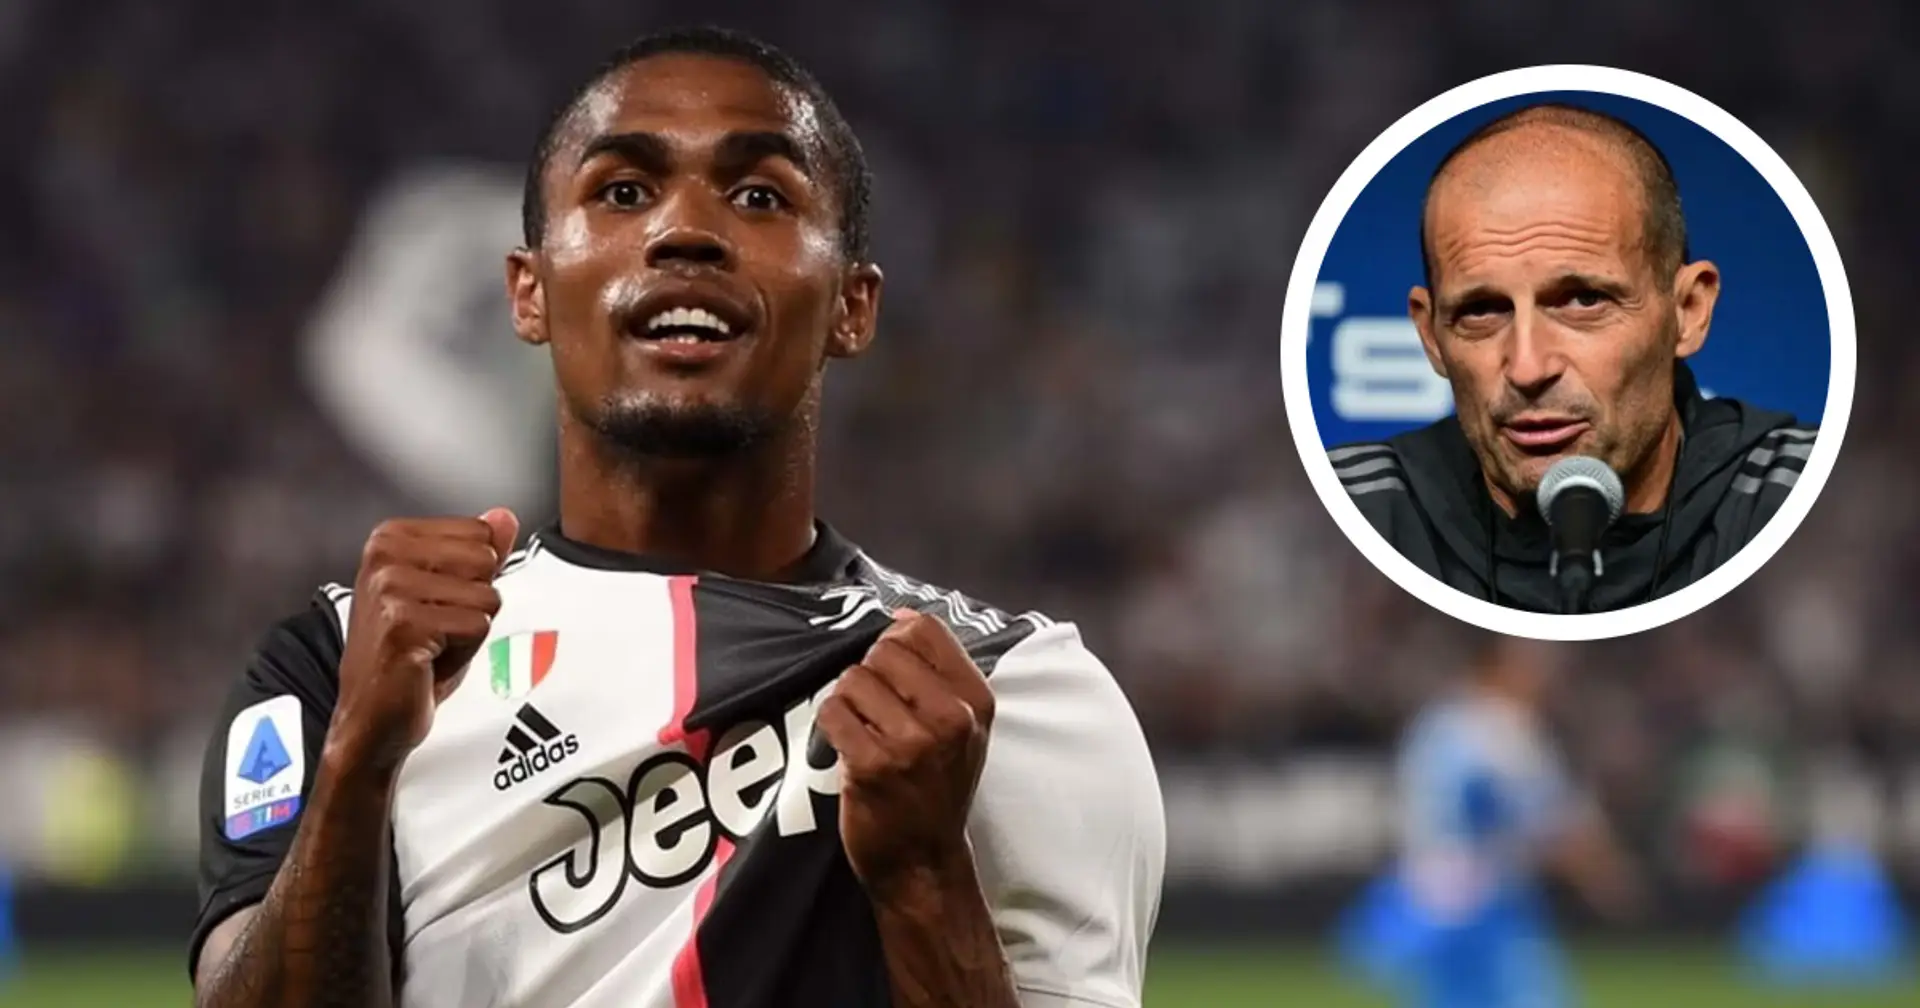 'Mi ricorda Douglas Costa': Allegri rivela quale giocatore della Juventus gli ricorda il grande ex brasiliano